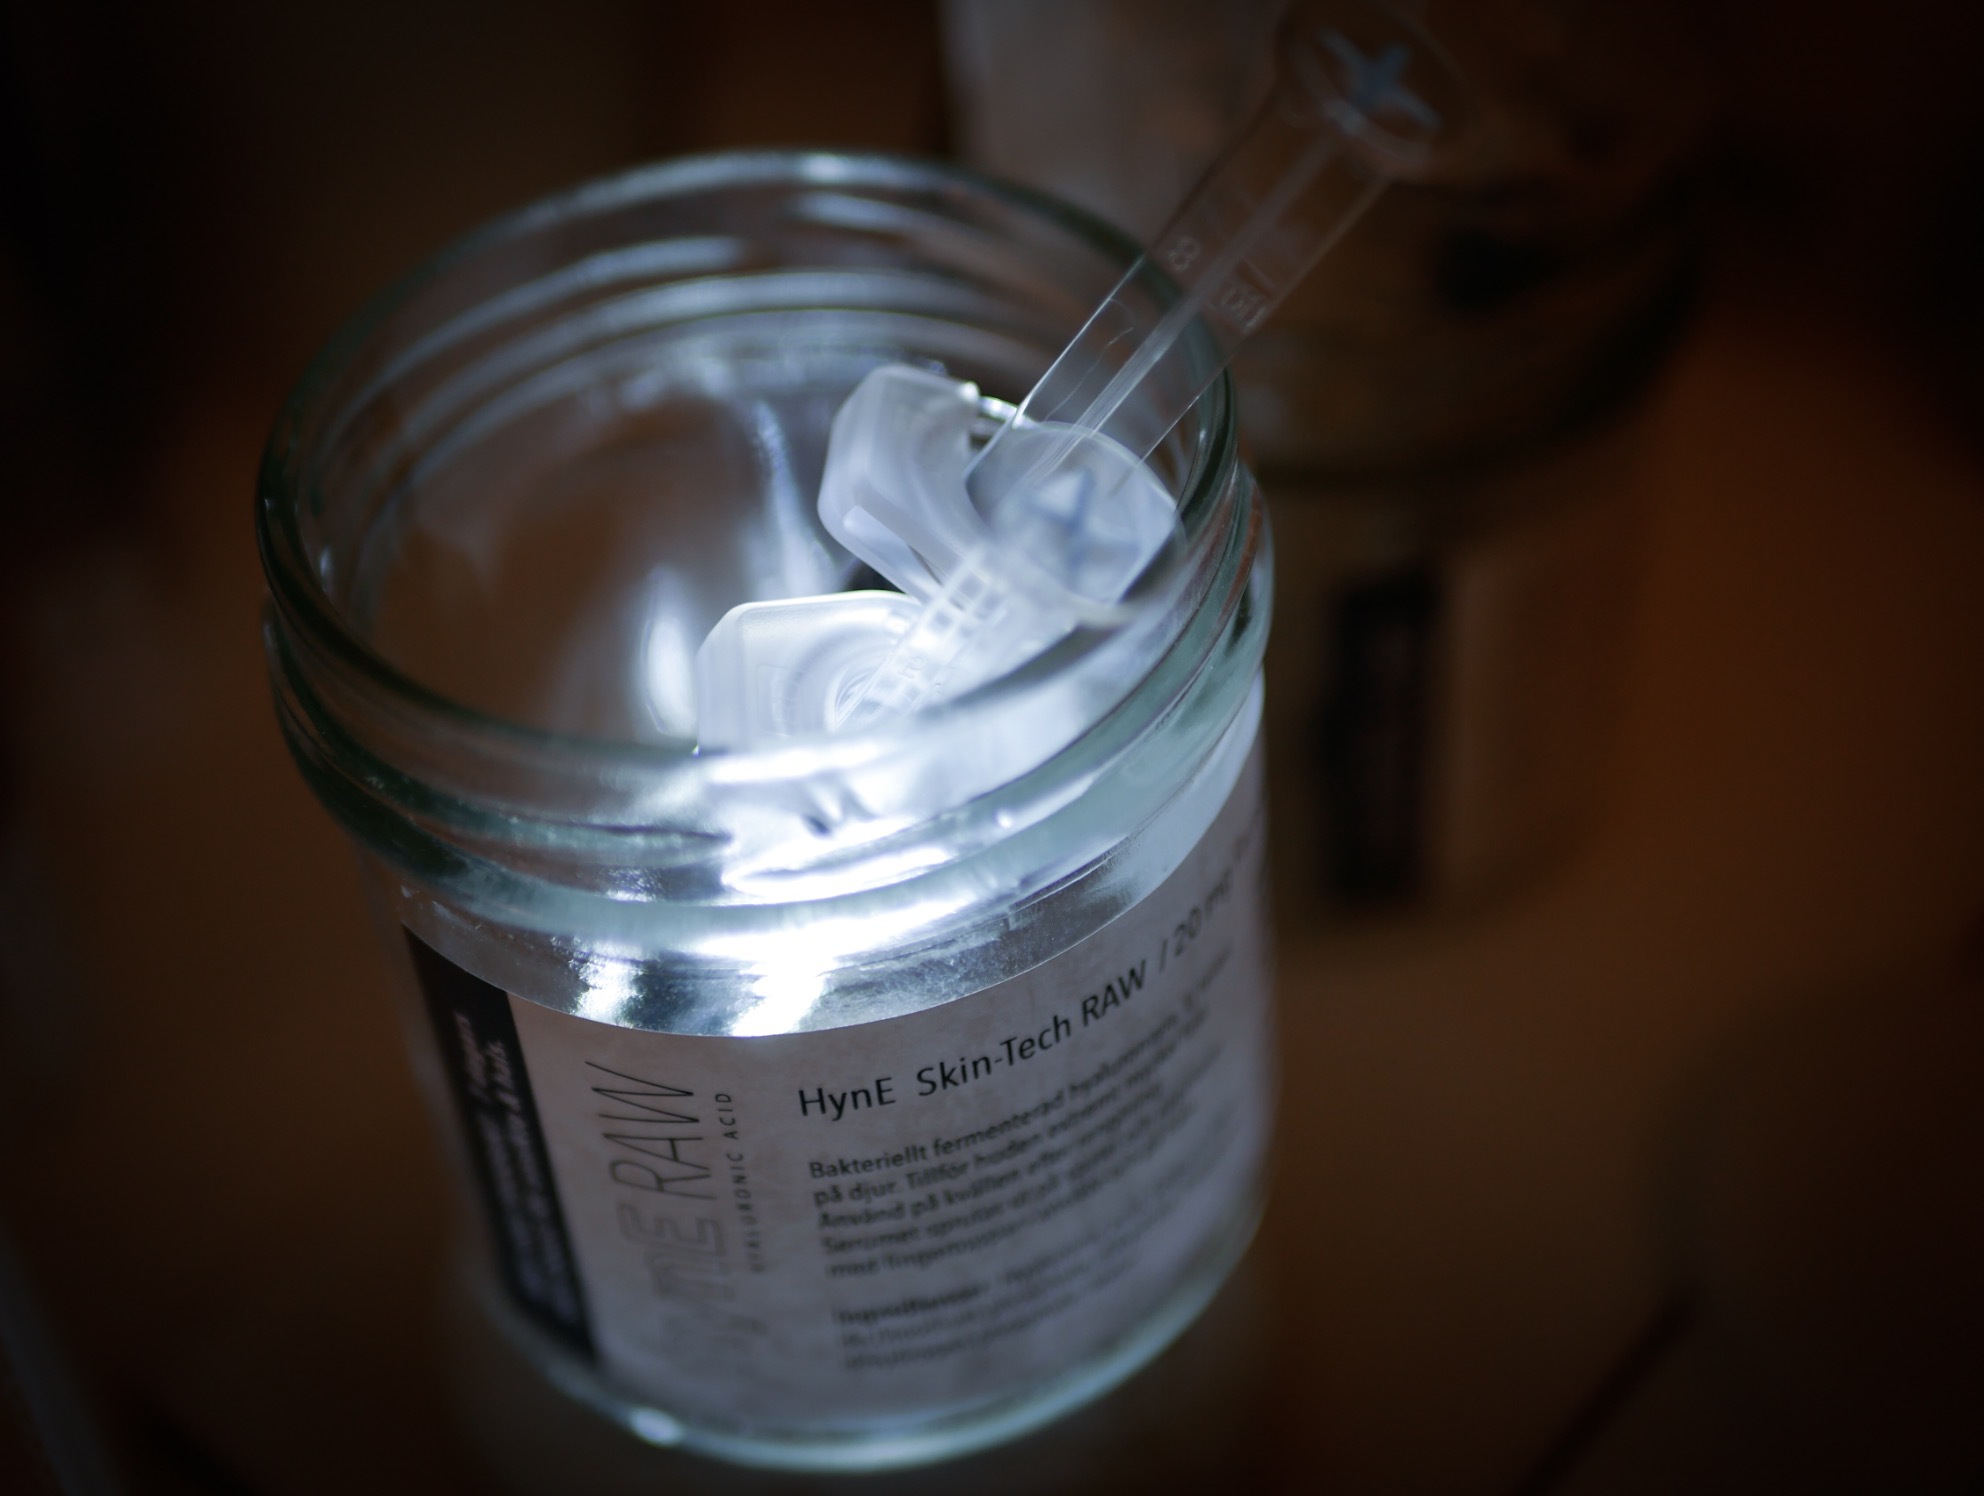 Svenska Hyn-E tillverkar ett fraktionerad hyakuronsyra-serum i en finurlig spruta! .Obs! Applicerad på ytan!